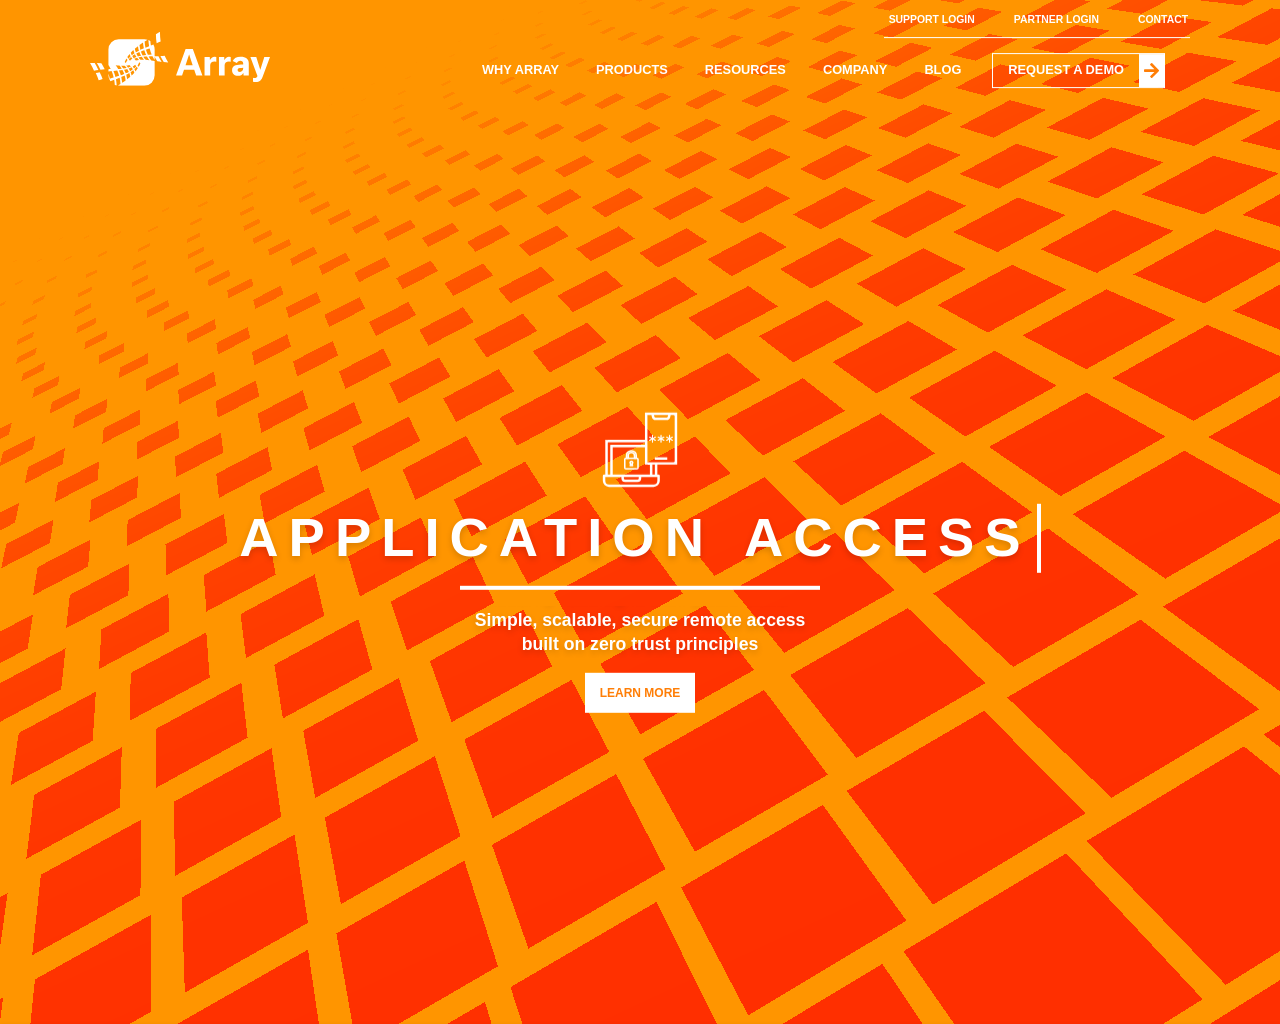 arraynetworks.com